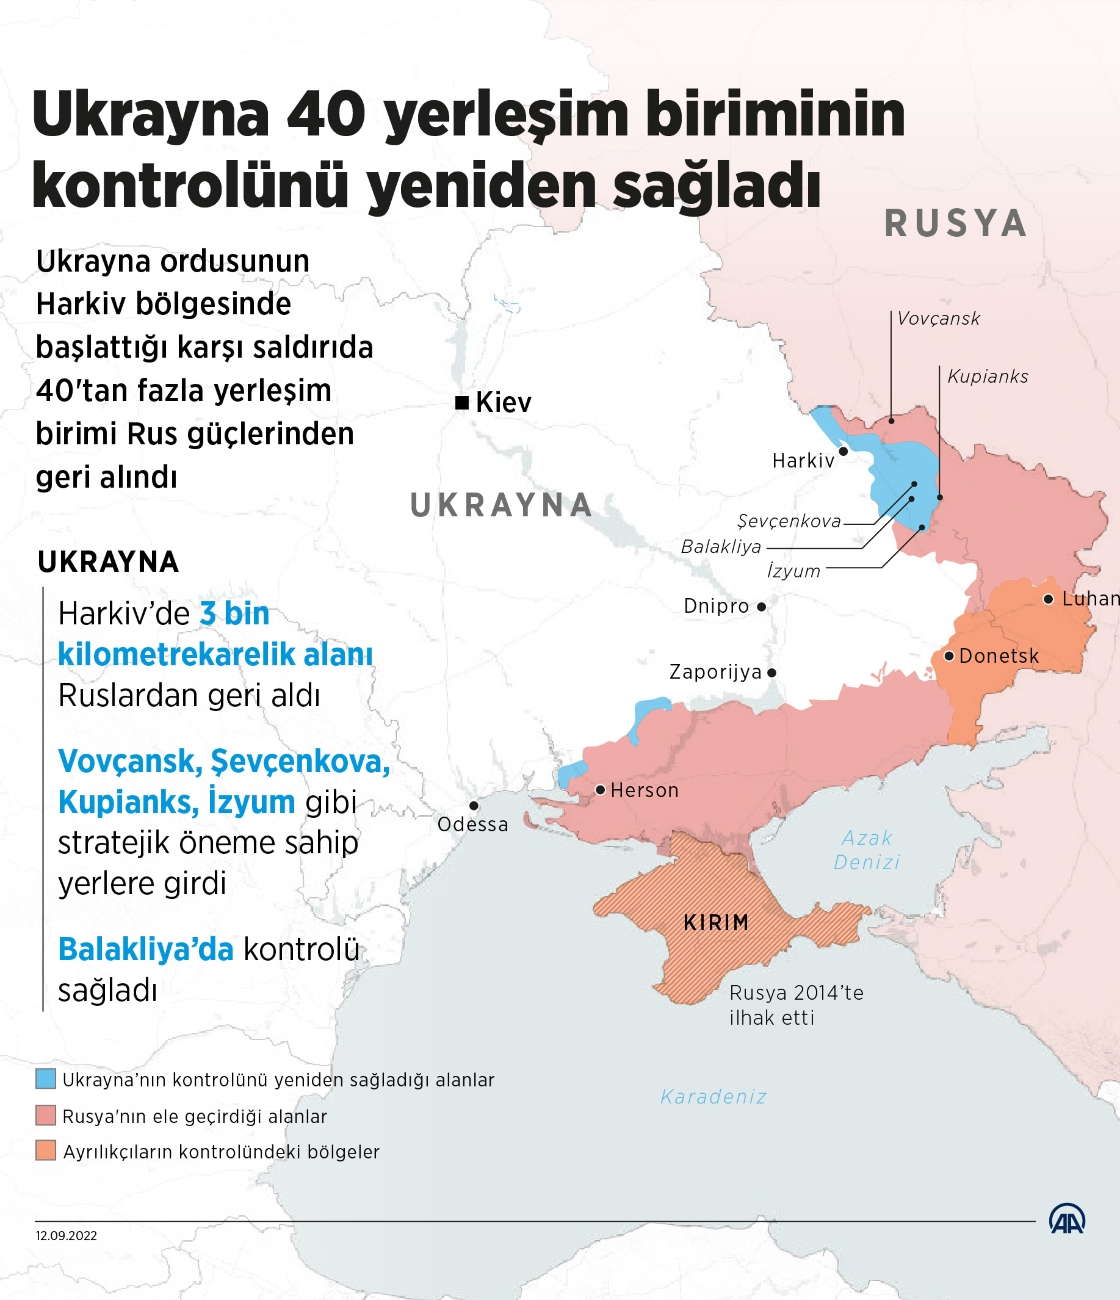 Ukrayna 40 yerleşim biriminin kontrolünü yeniden sağladı